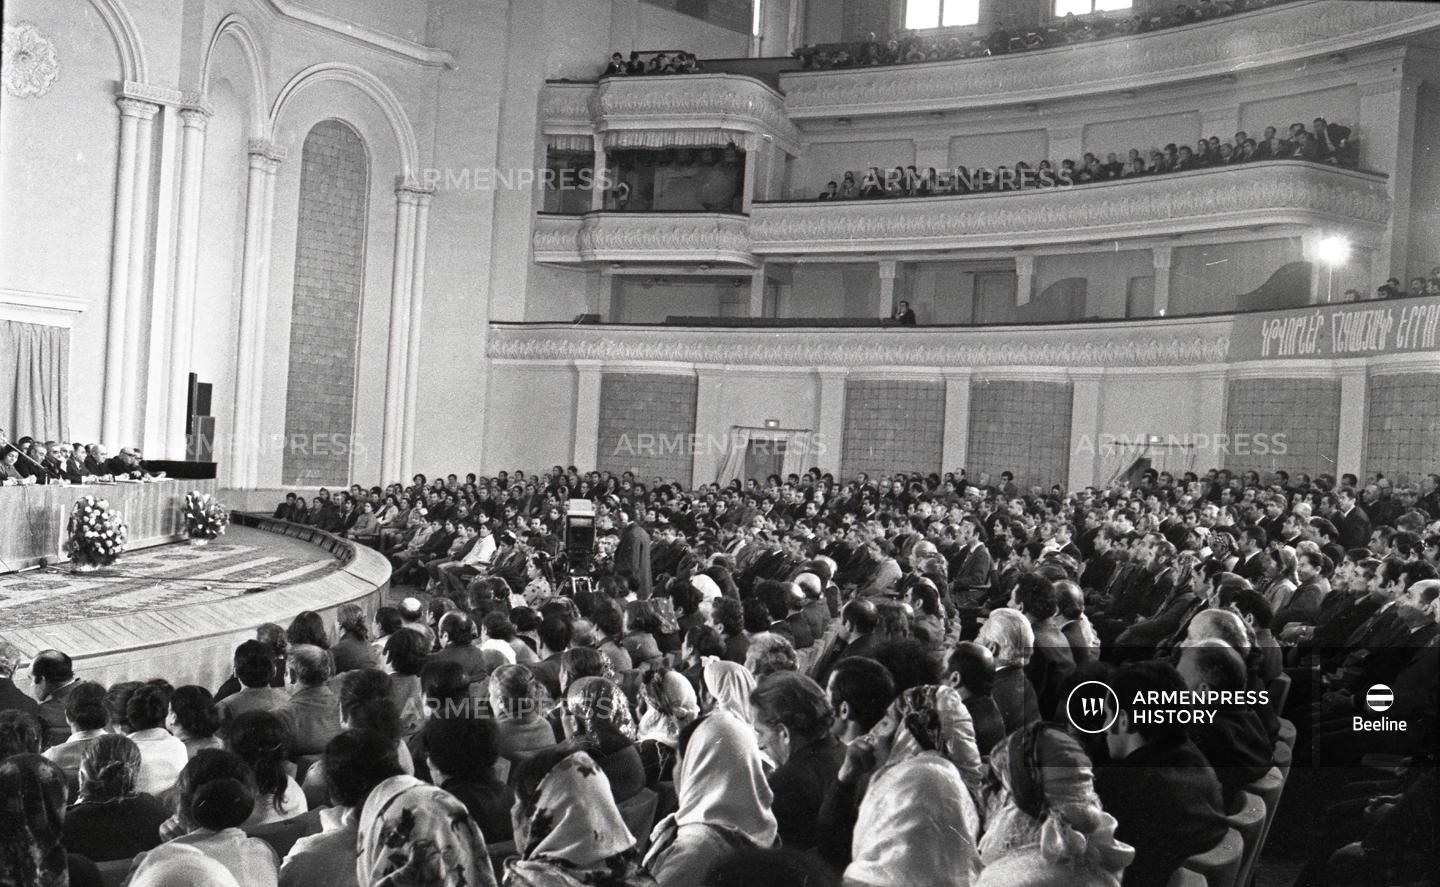 Հավաք` նվիրված Հոկտեմբերյան հեղափոխության 60-ամյակին